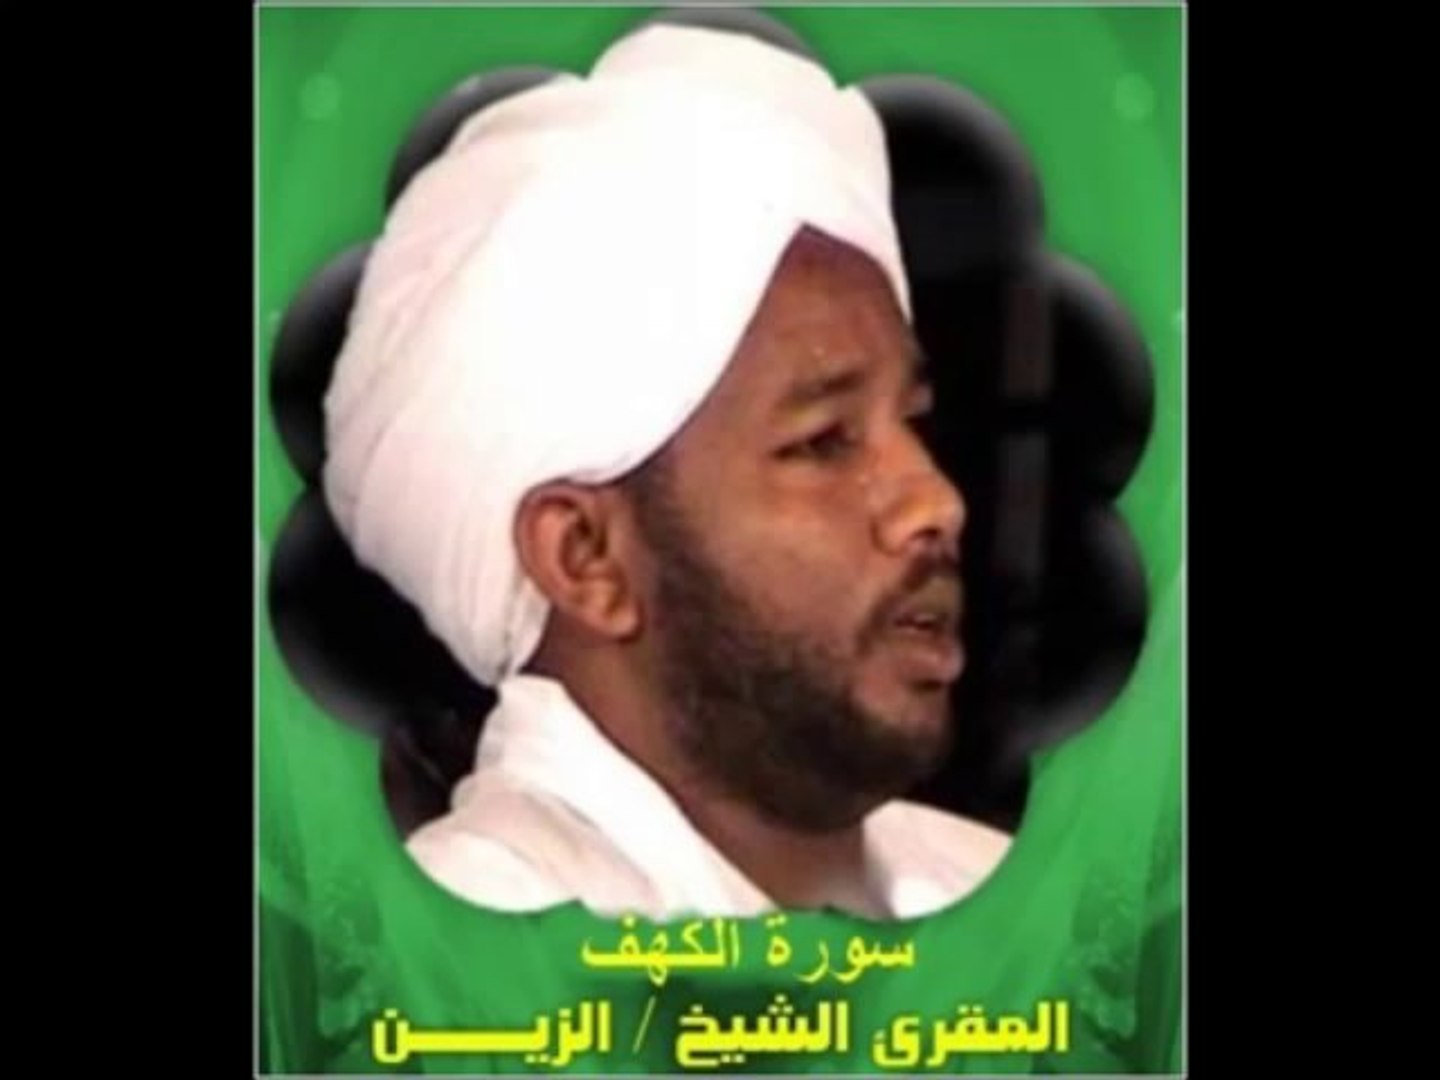 سورة الكهف - الشيخ الزين محمد أحمد - فيديو Dailymotion